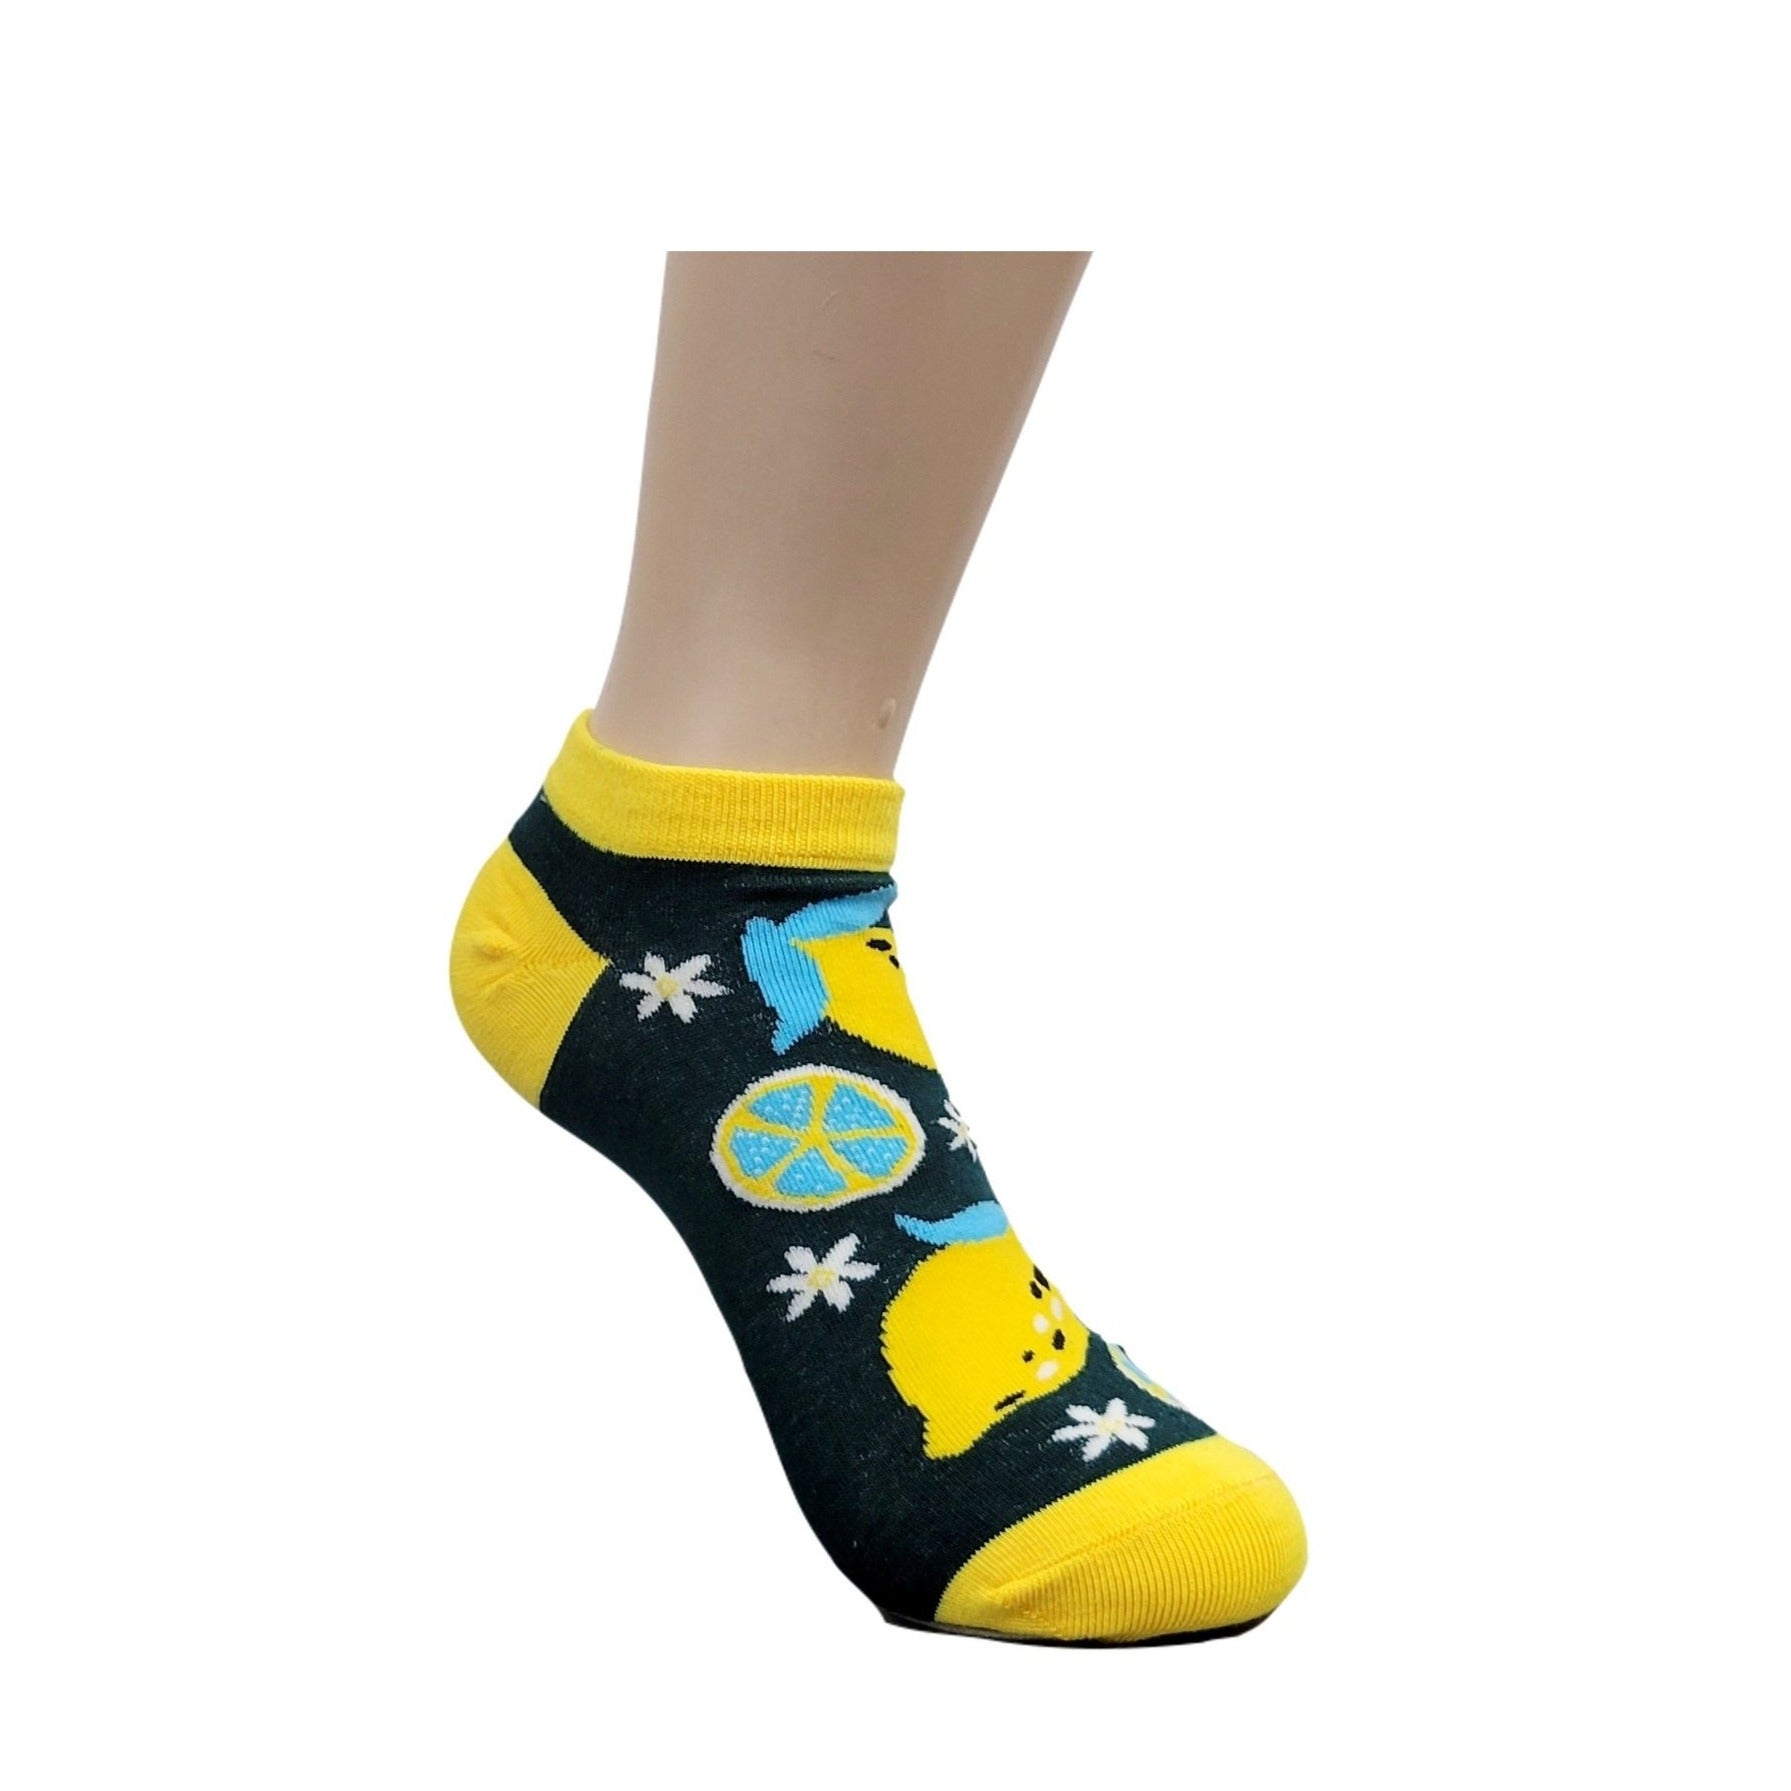 Lemon Patterned Ankle Socks (Adult Medium)